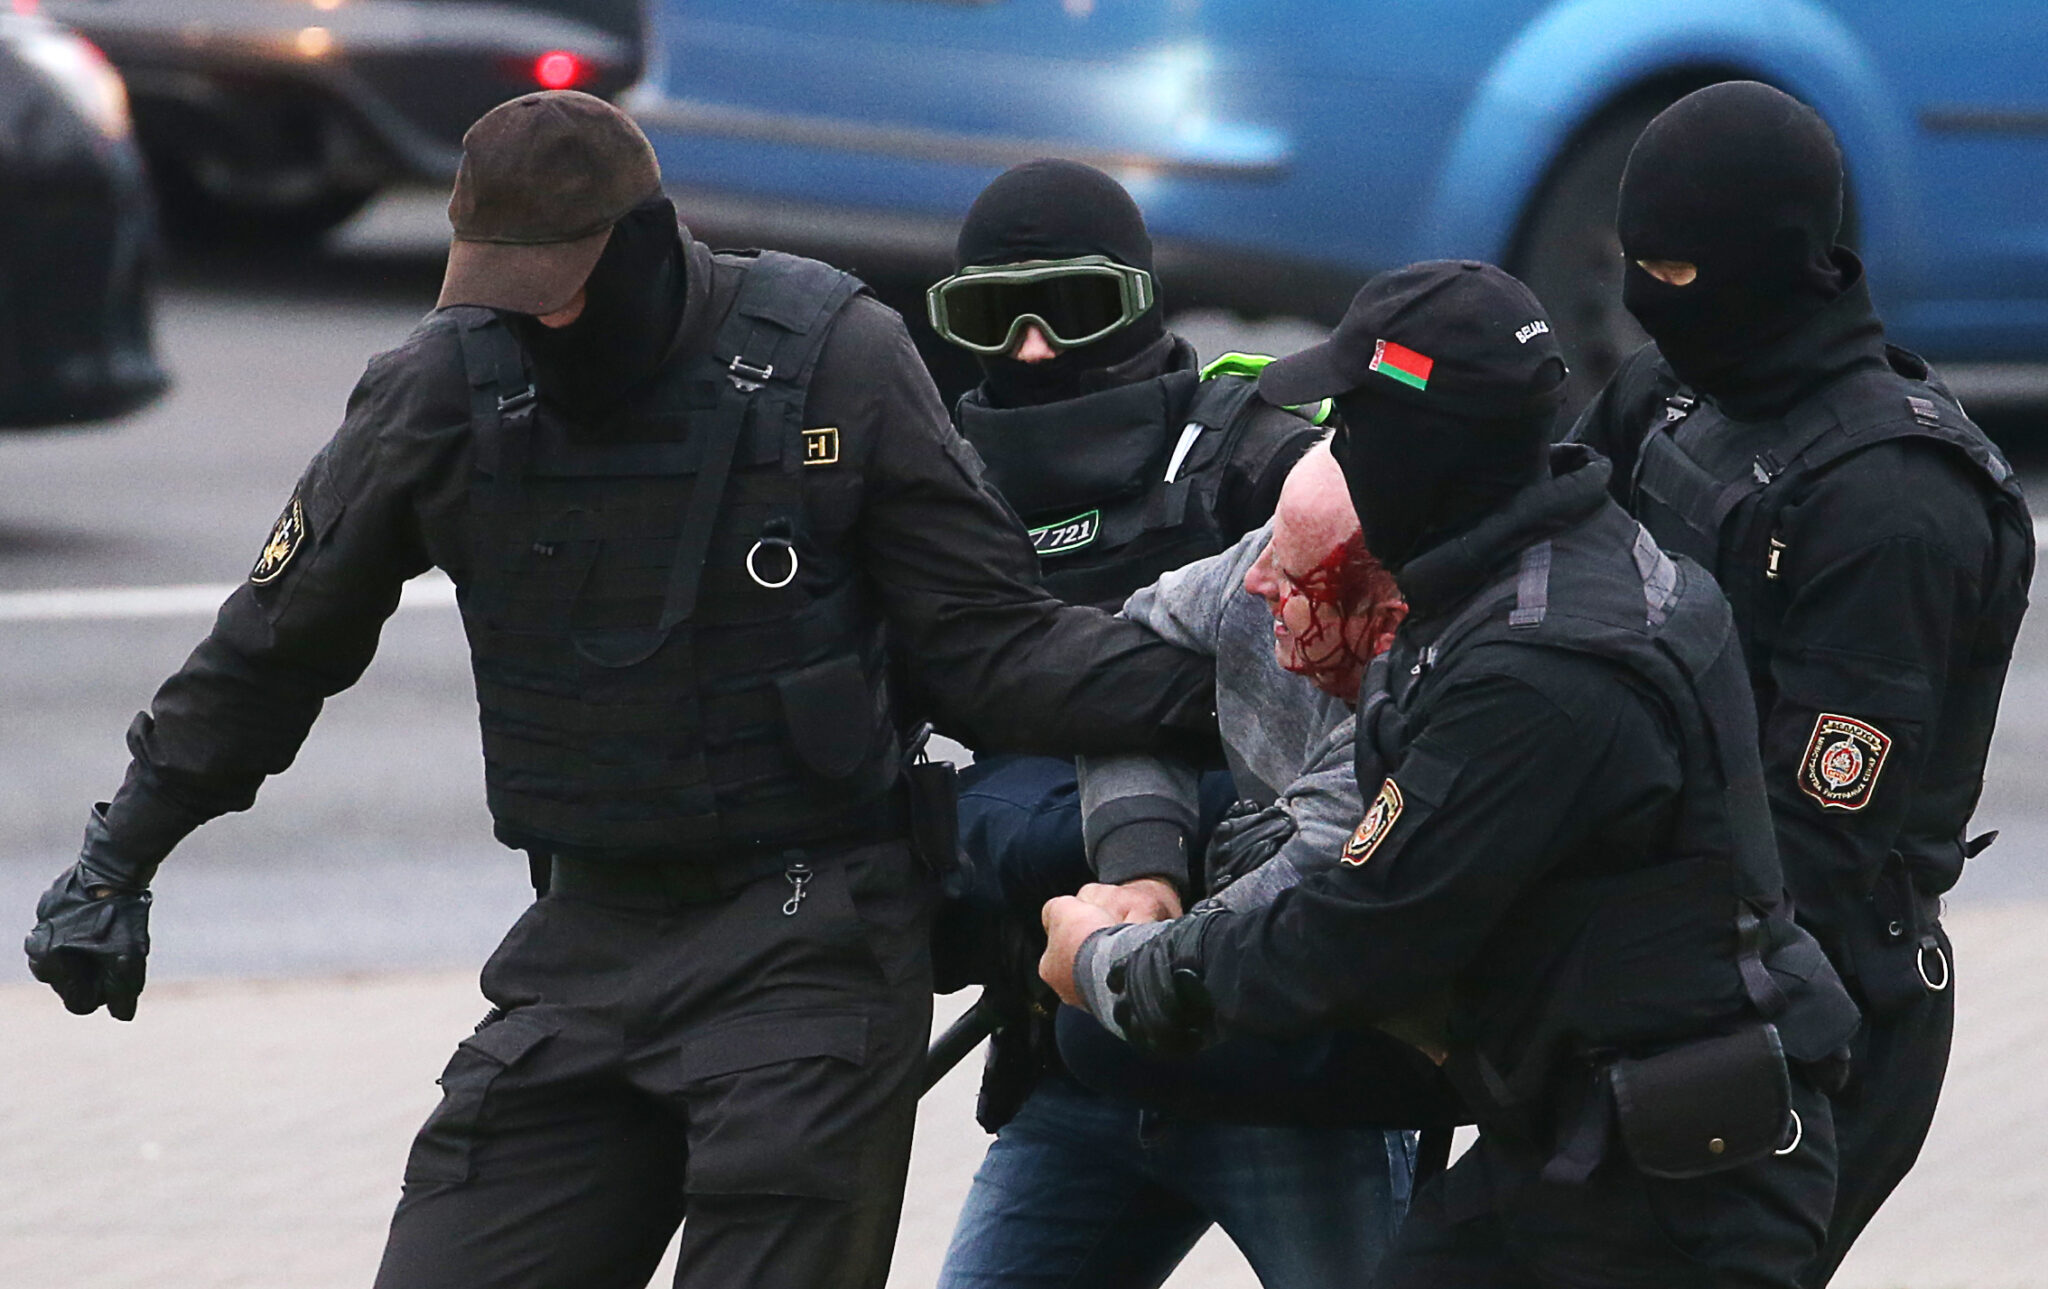 Задержание участника акции протеста в Минске, 11 октября 2020 года. Фото Natalia Fedosenko/TASS/Scanpix/Leta